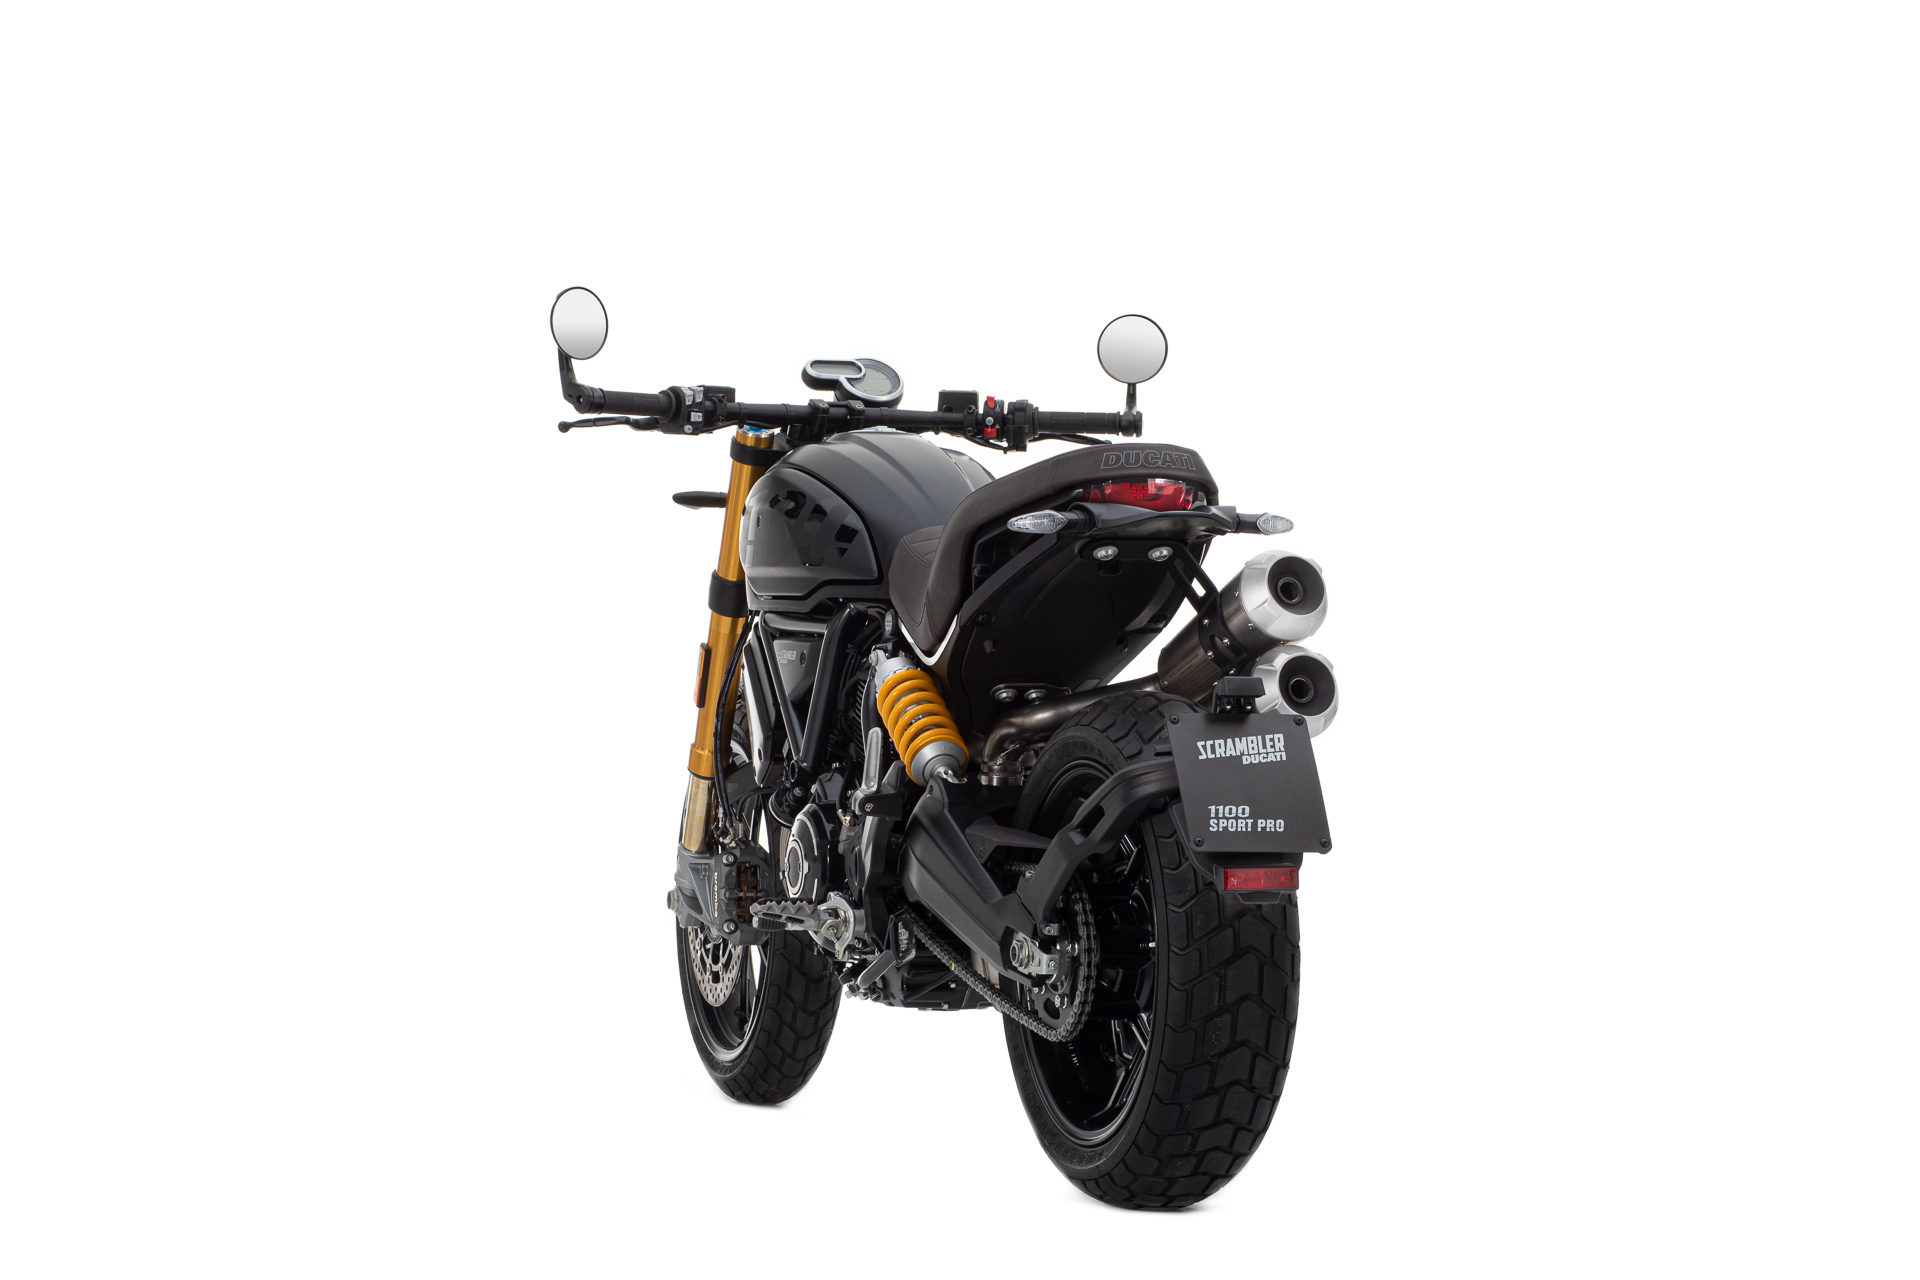 Ducati Scrambler 1100 Pro y 110 Sport Pro: ¡más café racer!